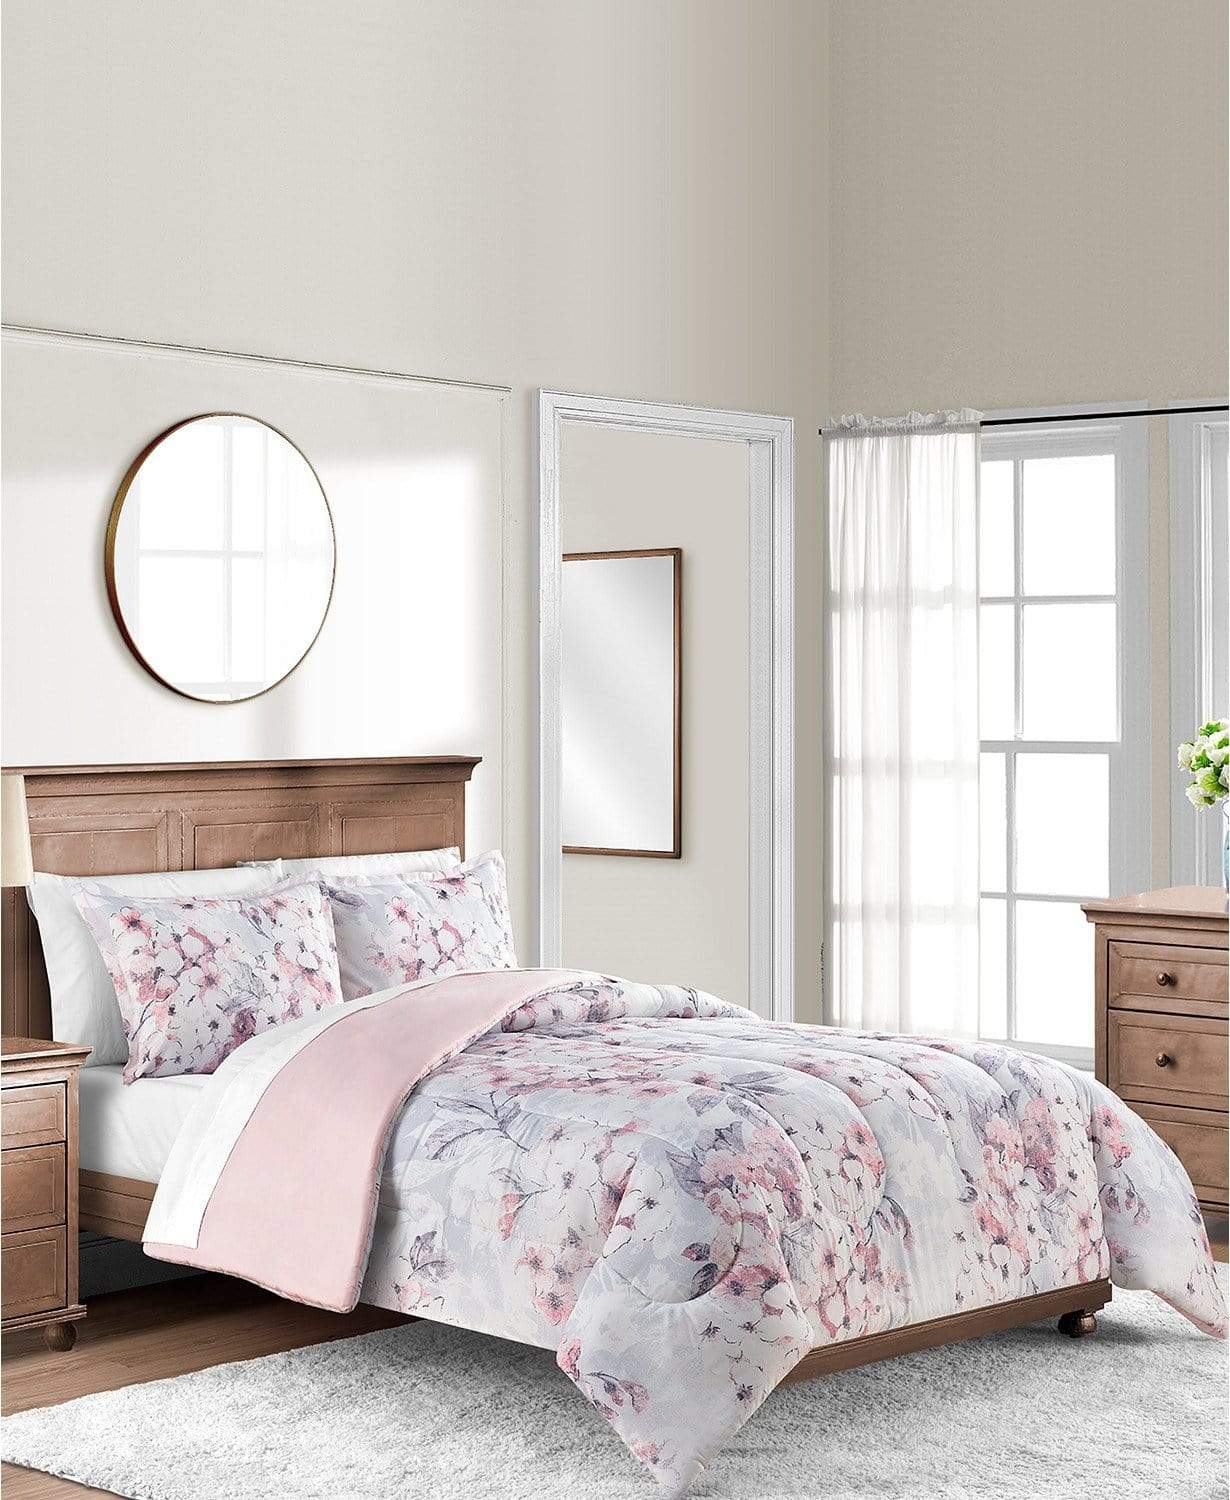 Reversible Comforter/Quilt/Duvet Full / Queen / Pink / White Colesville Comforter Set - 3 Pieces